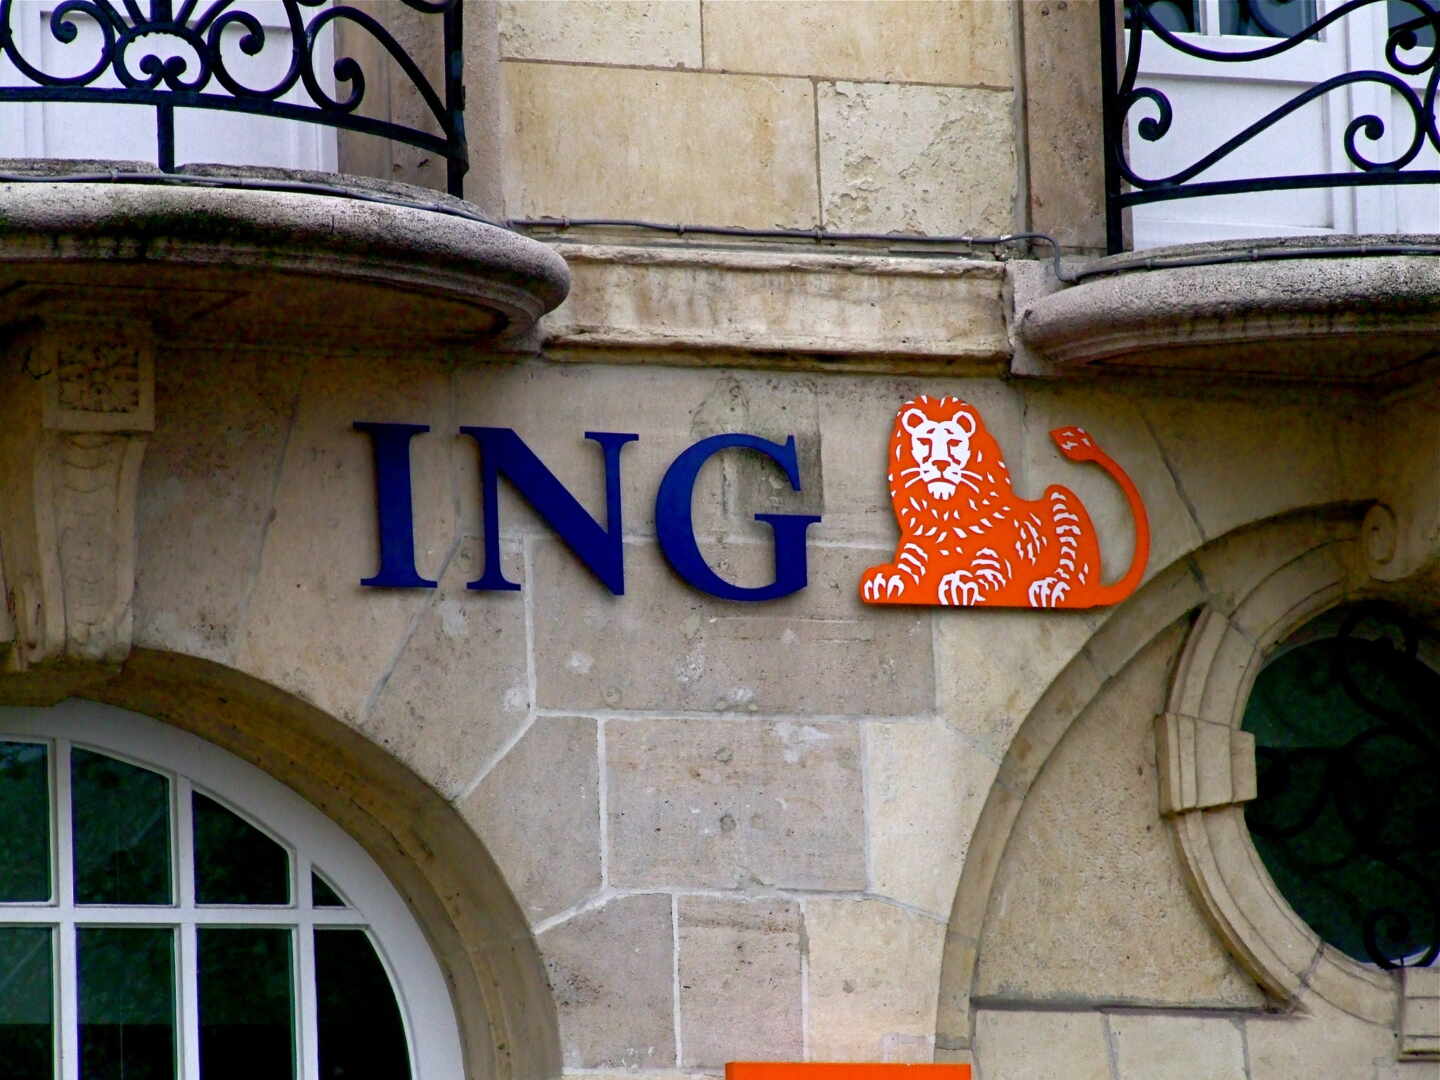 La 'guerra' en la banca por captar clientes se calienta: ING regala más dinero por su Cuenta Naranja